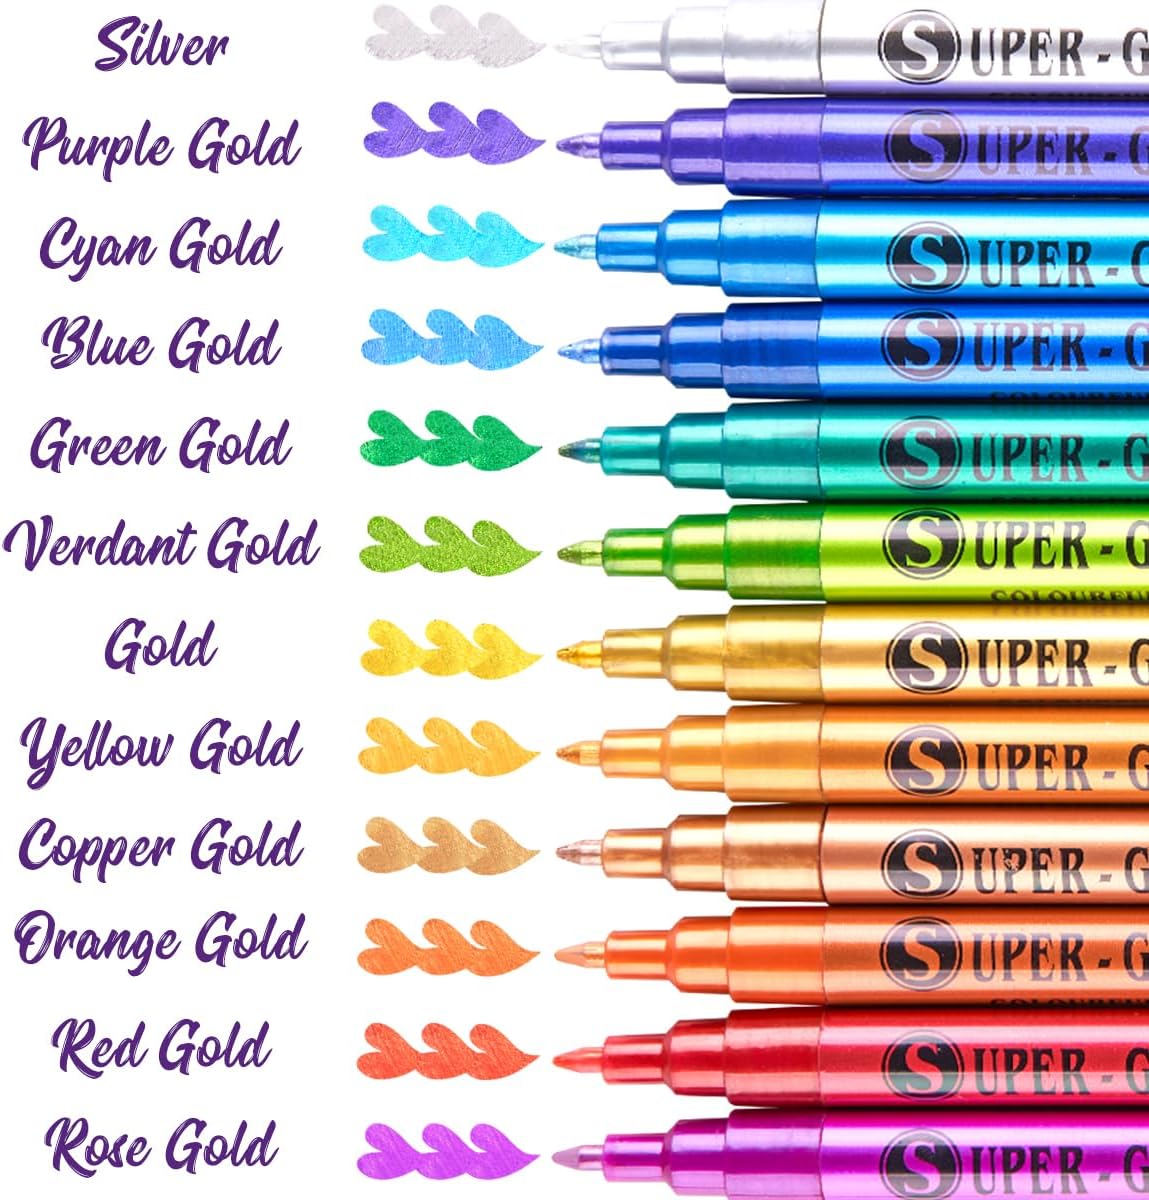 LIGHTWISH – stylos de peinture acrylique métallisés Super dorés, marqueurs à paillettes, pointe Ultra fine scintillante 0.7mm 